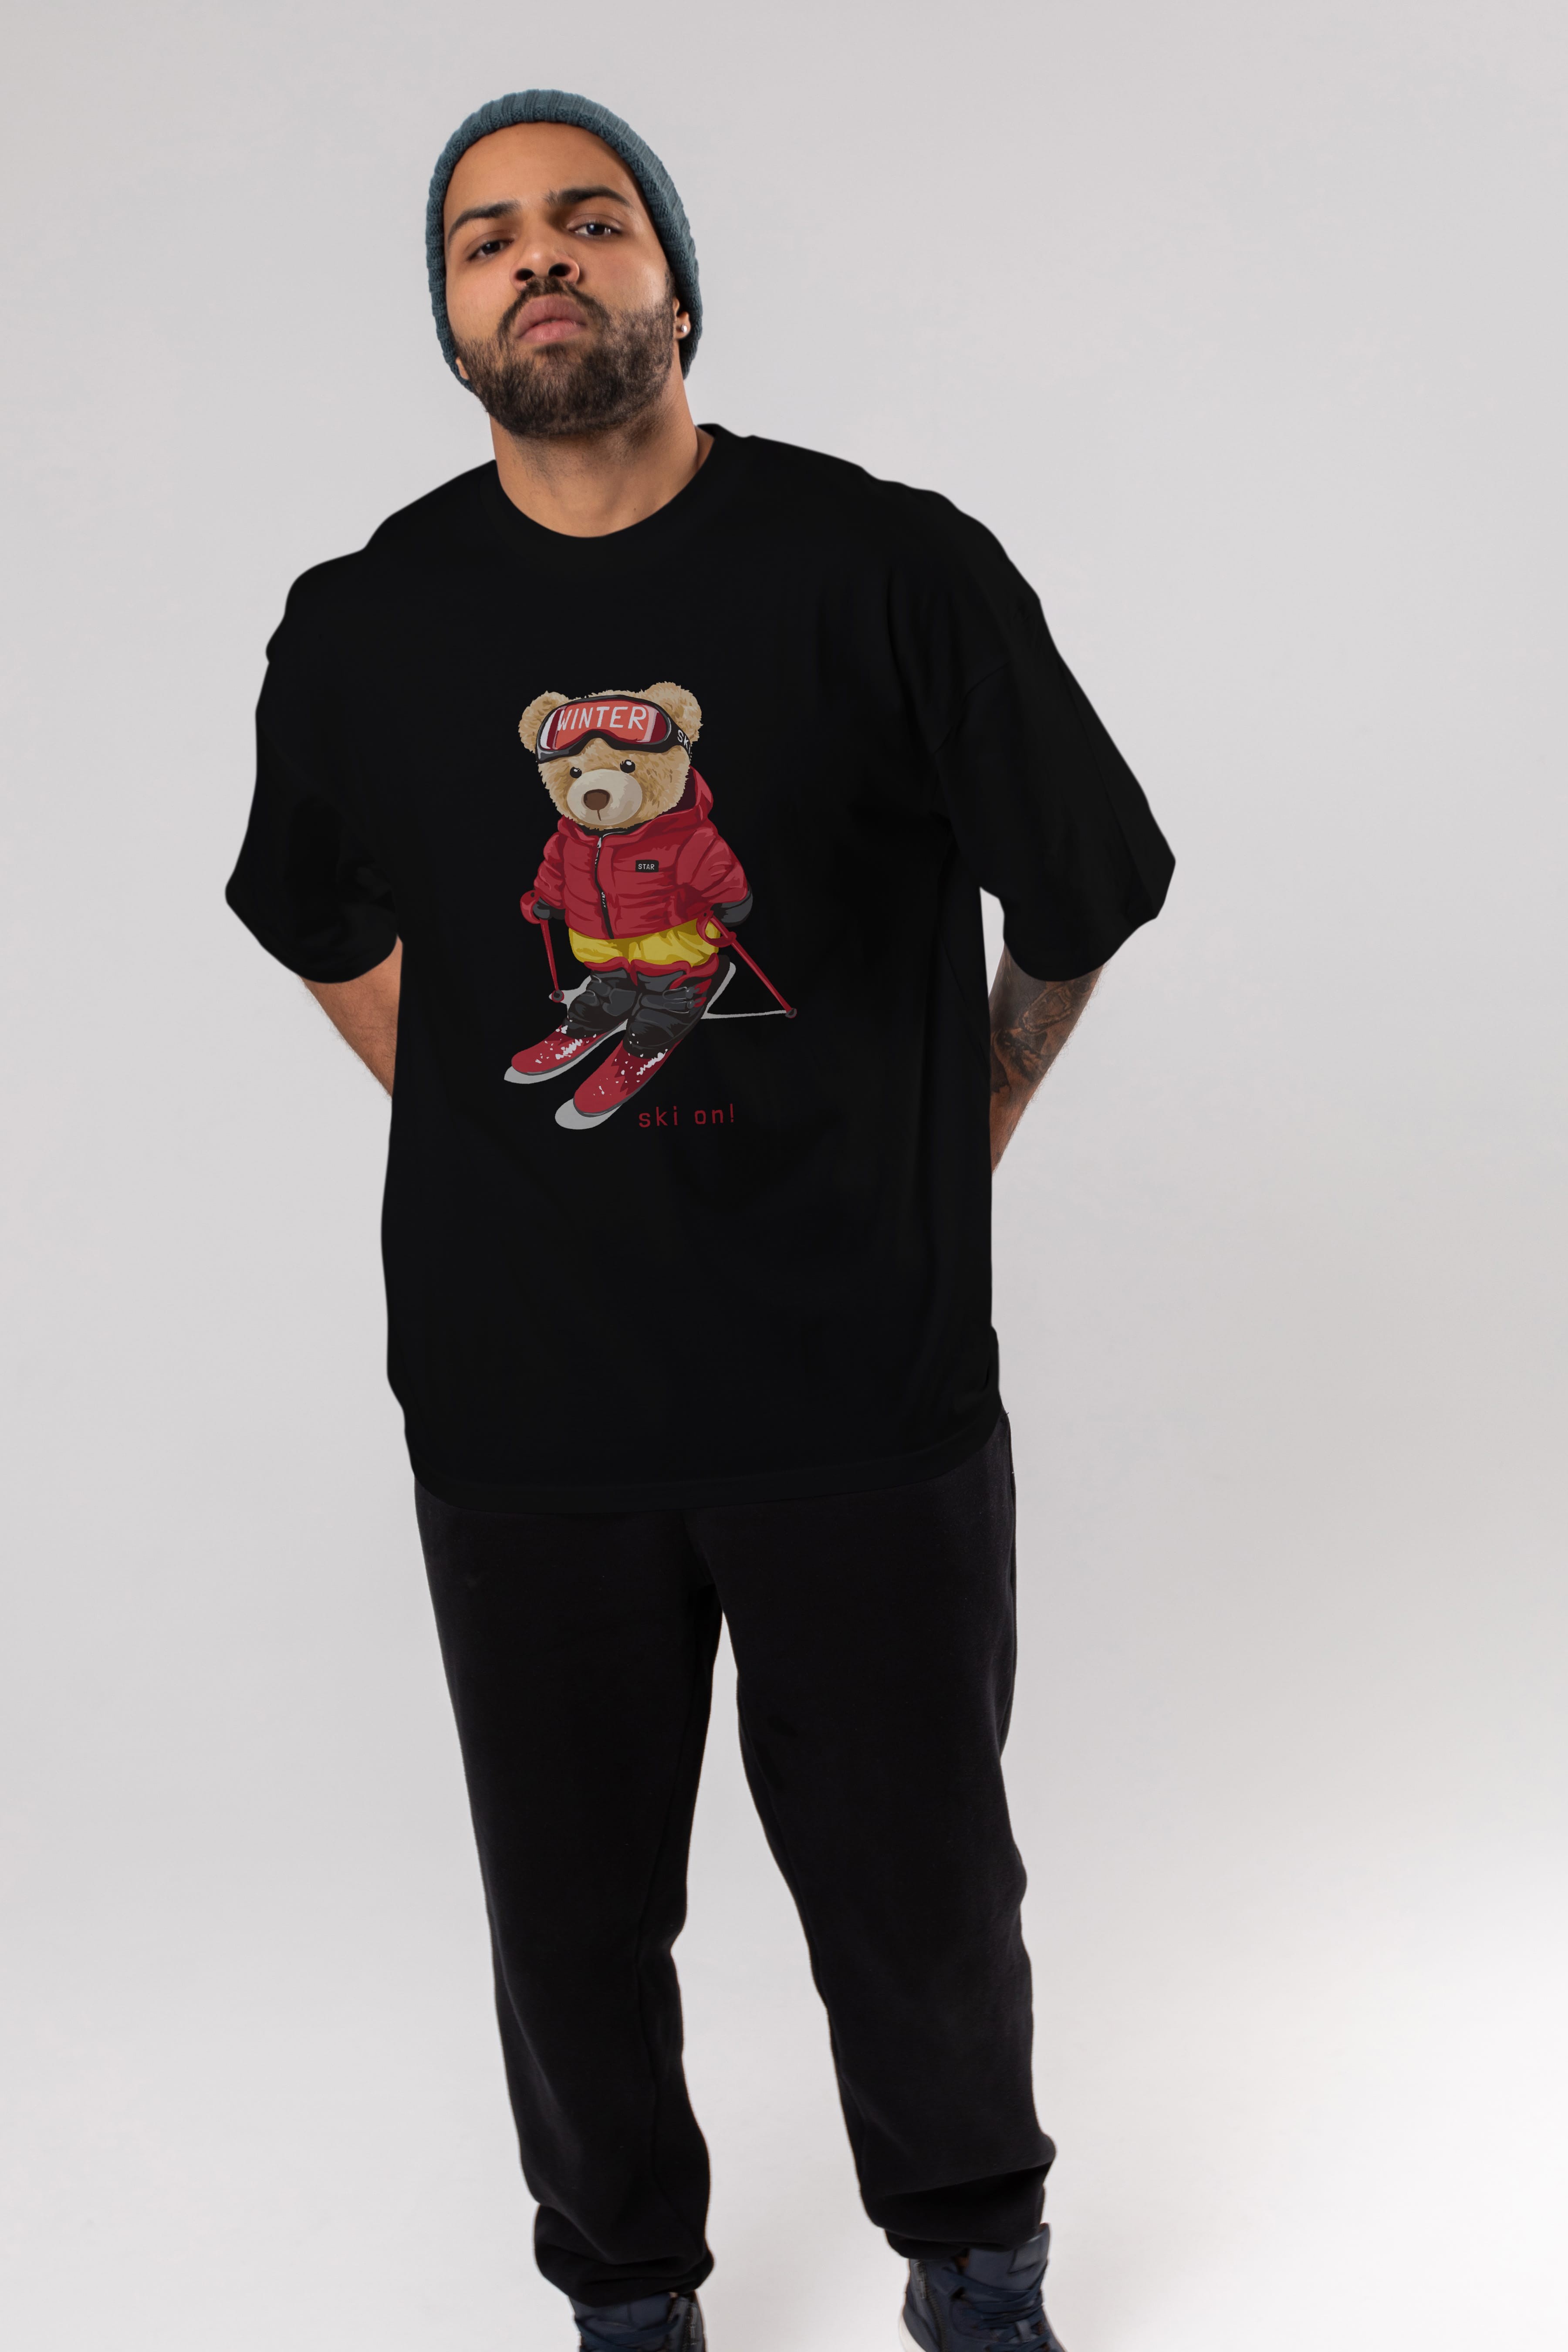 Teddy Bear Ski On Ön Baskılı Oversize t-shirt Erkek Kadın Unisex %100 Pamuk